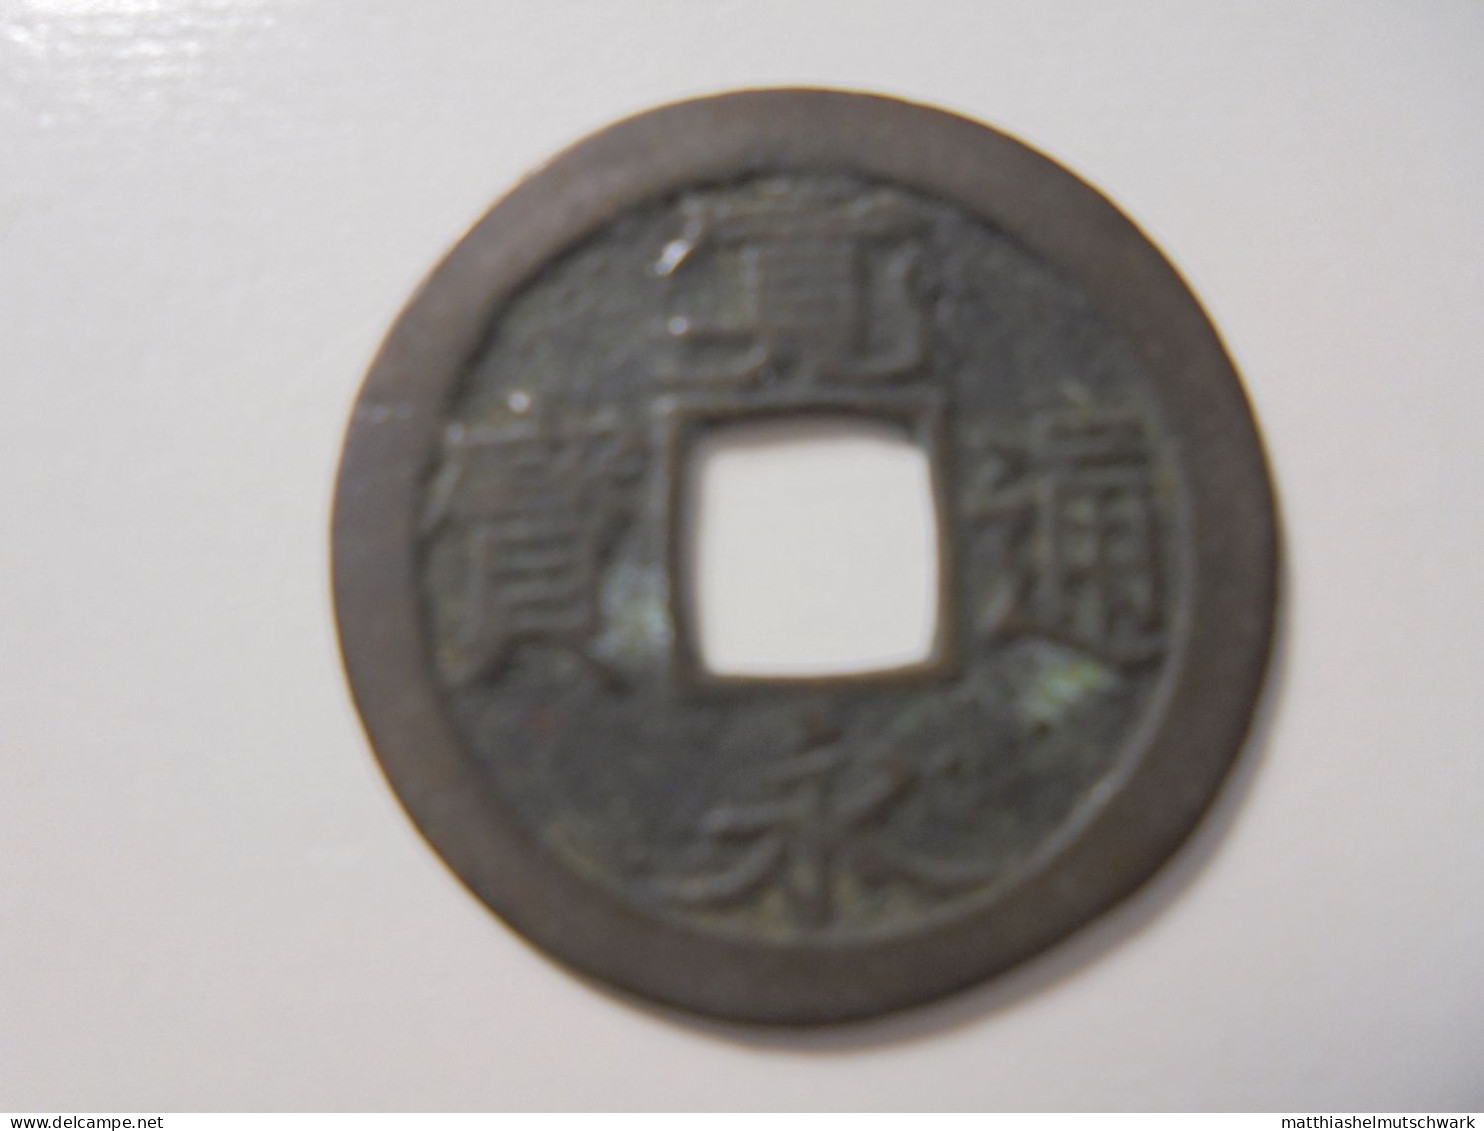 82x1 Mon 1736  		1 Mon, 1736 Kwan-Ei Tsu-Ho Kupfer, 3g, ø 24mm C# 1.5 · Umlaufmünzen Preis: € 5.82 - Giappone